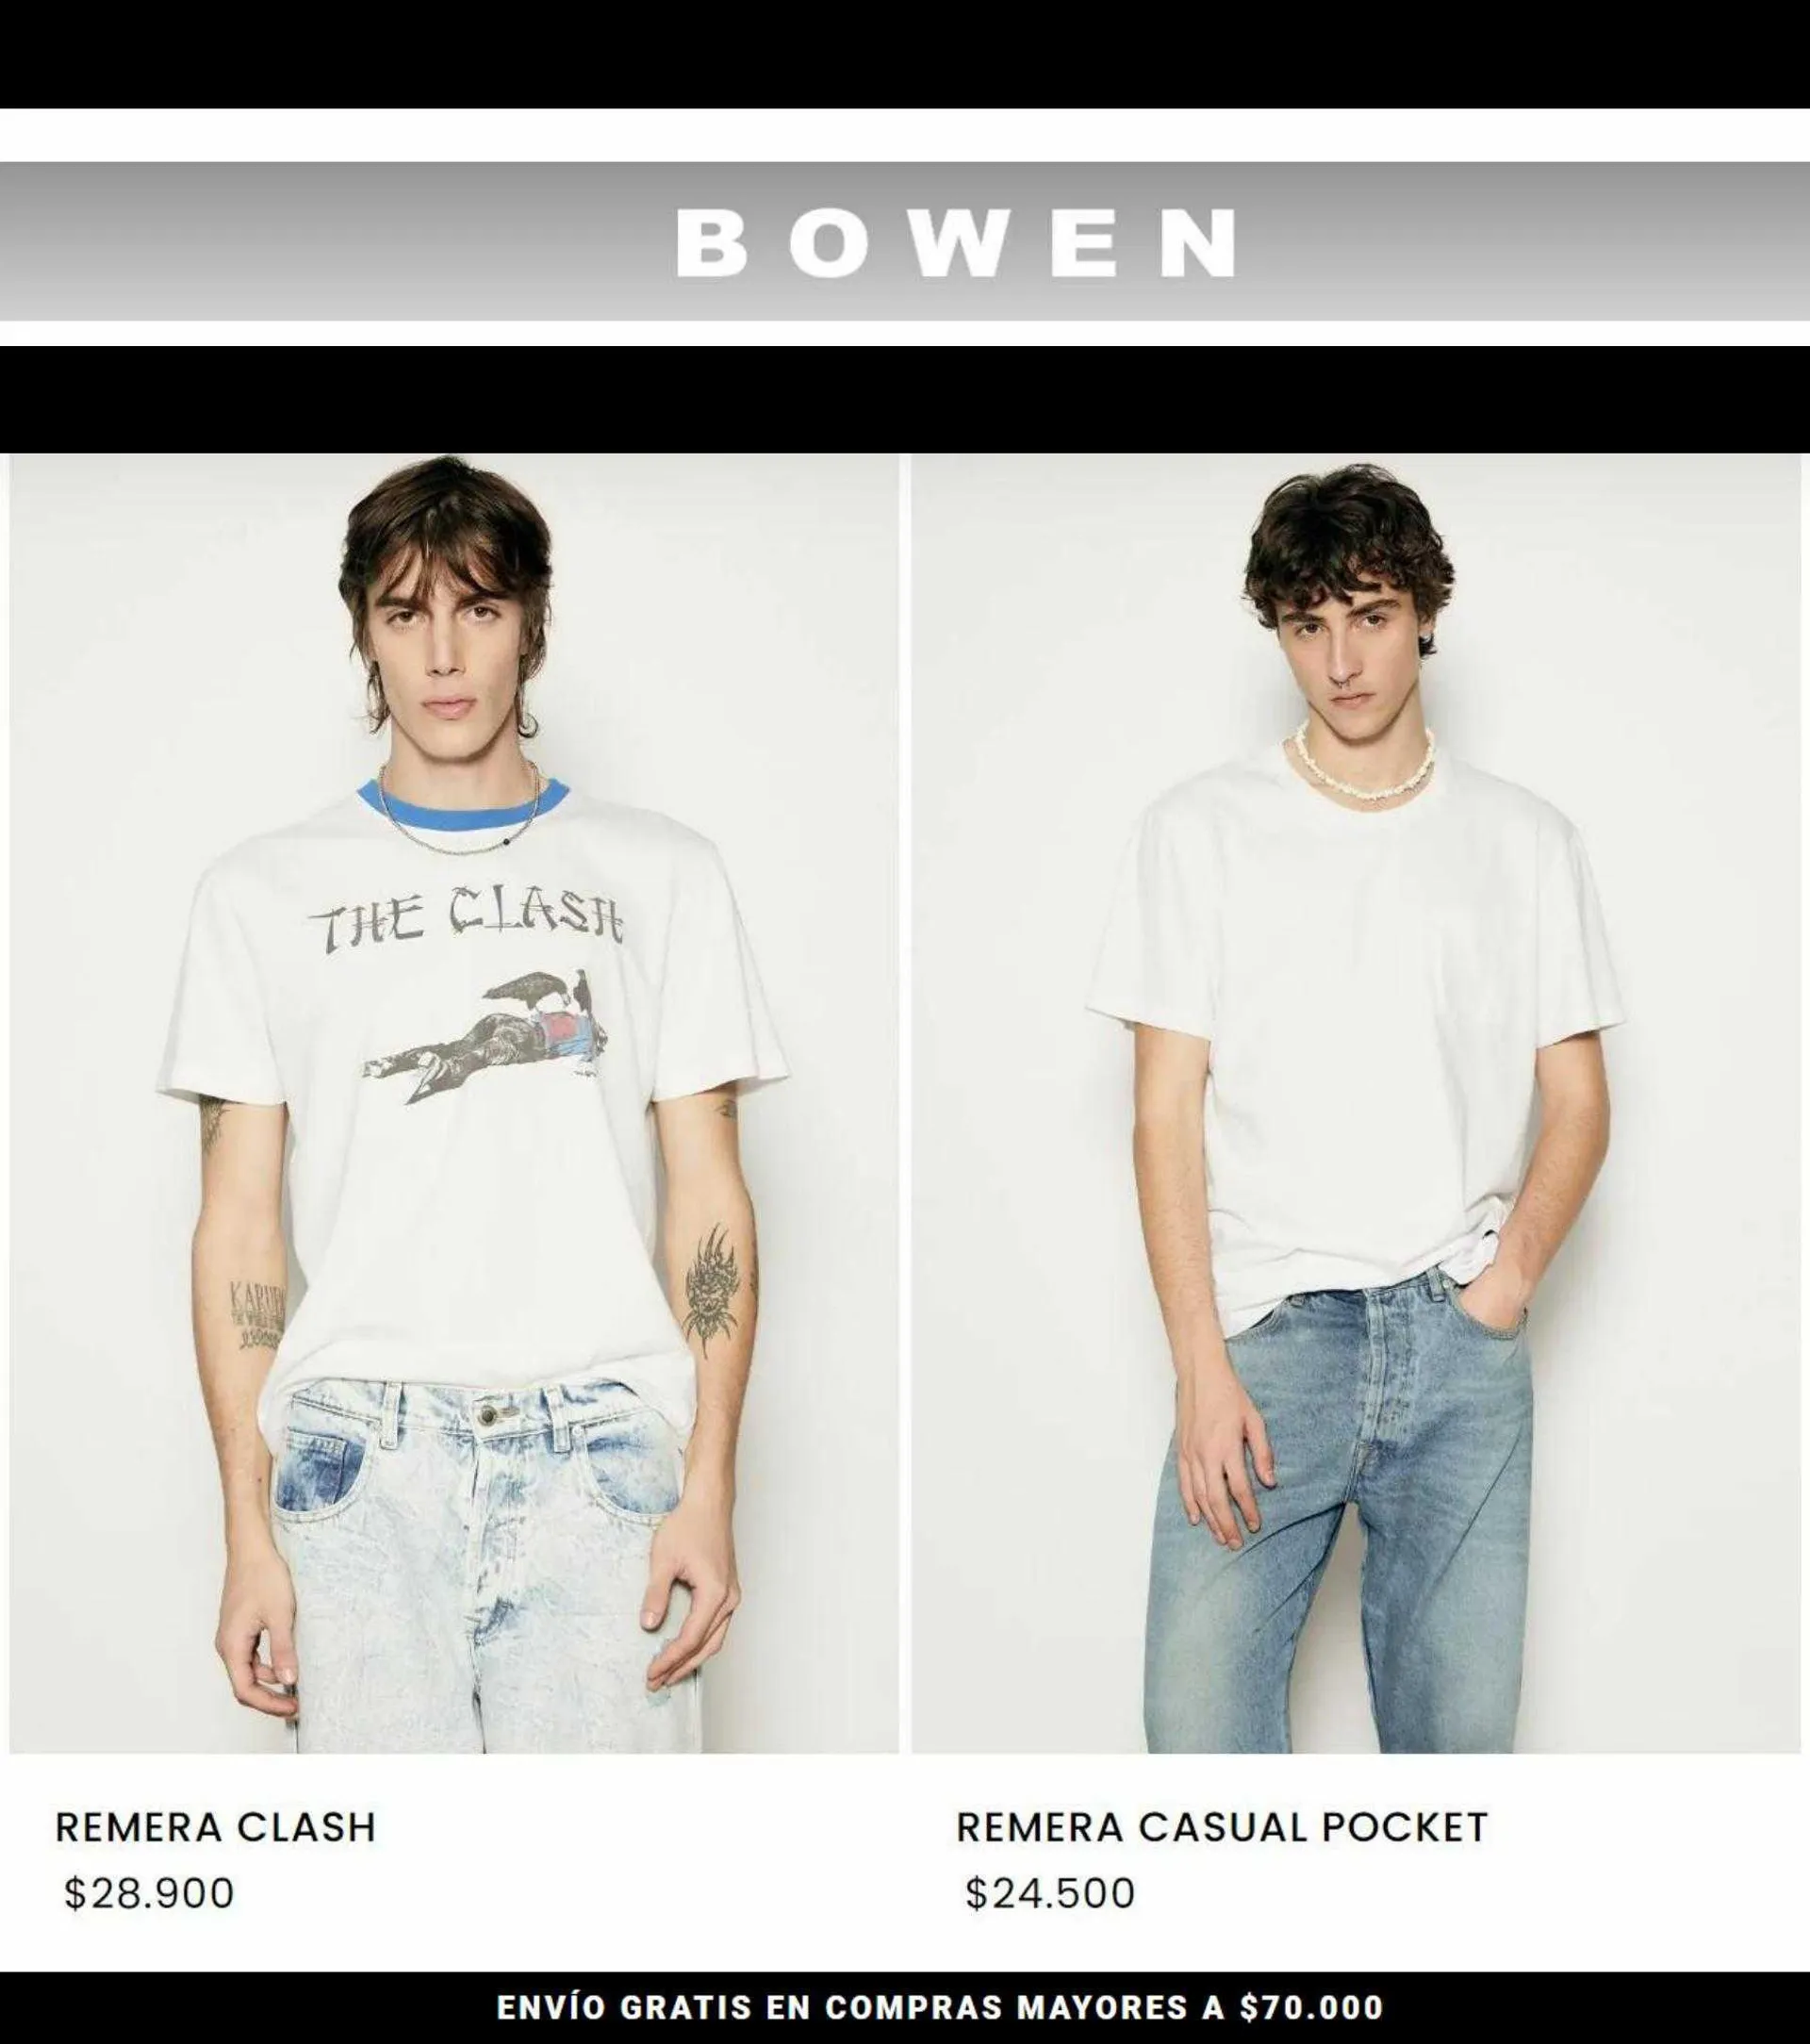 Catálogo Bowen - 1